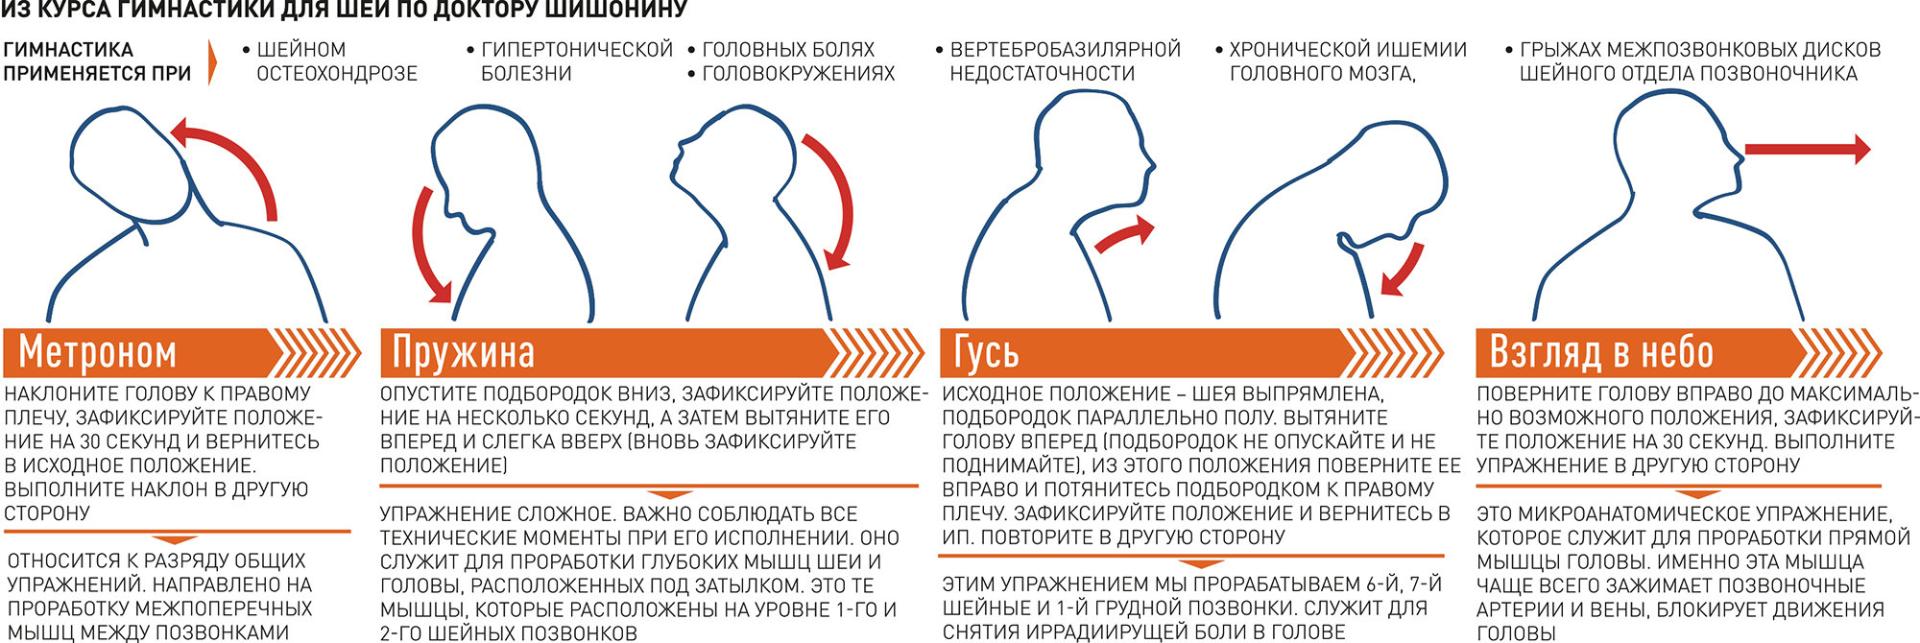 картинки правила зарядки для взрослых шейного хондроза